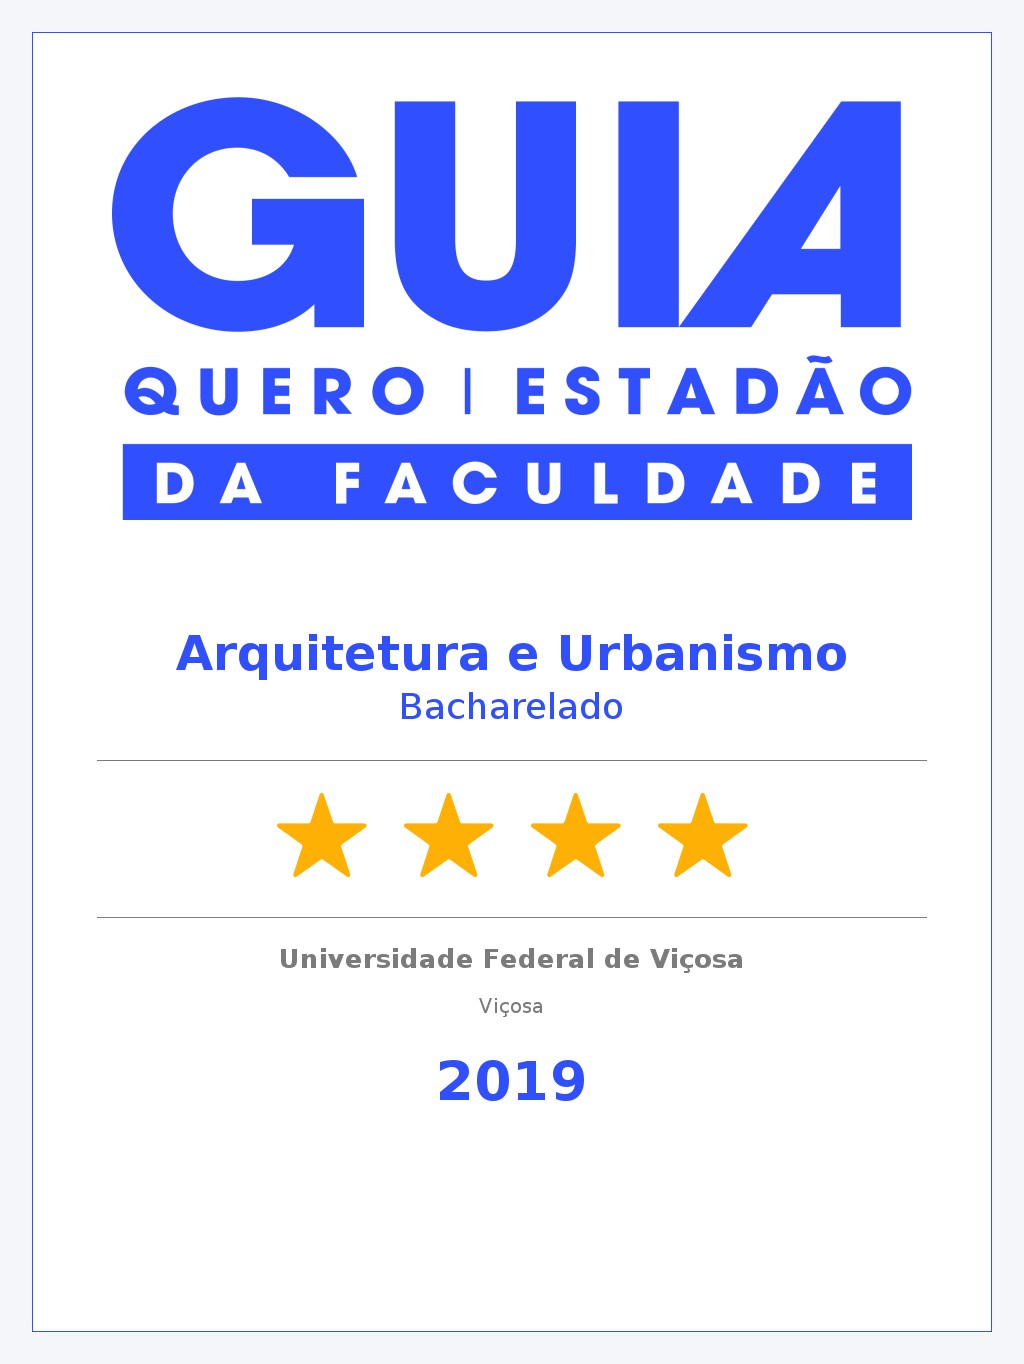 Arquitetura e Urbanismo UFV - Quatro Estrelas!!!